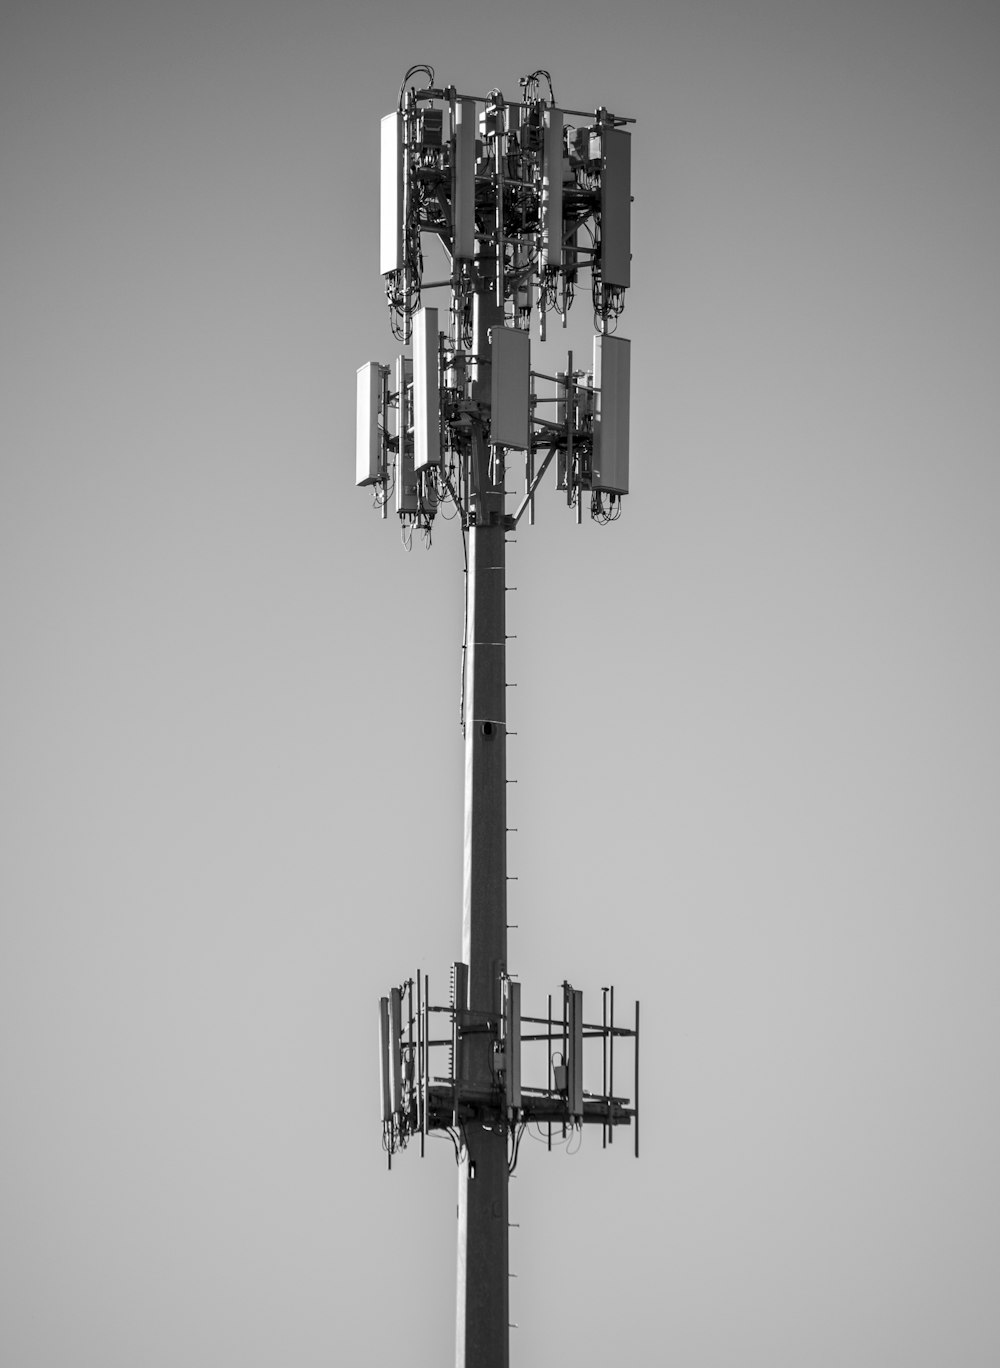 Foto in scala di grigi della torre elettrica in bianco e nero